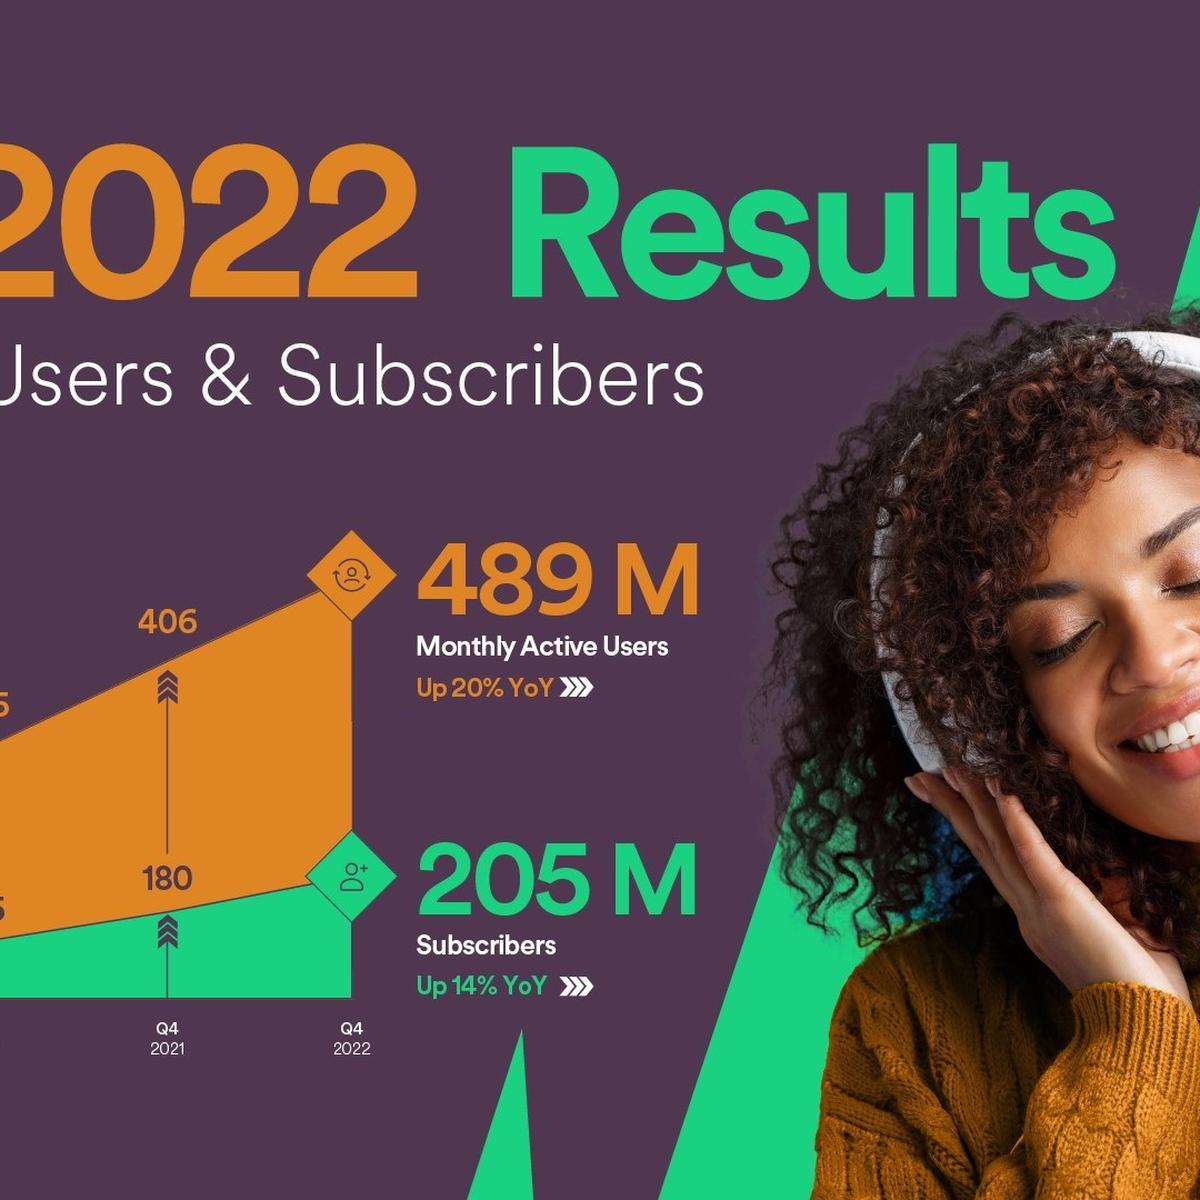 Los usuarios de Spotify Premium tendrán acceso a más de 150.000